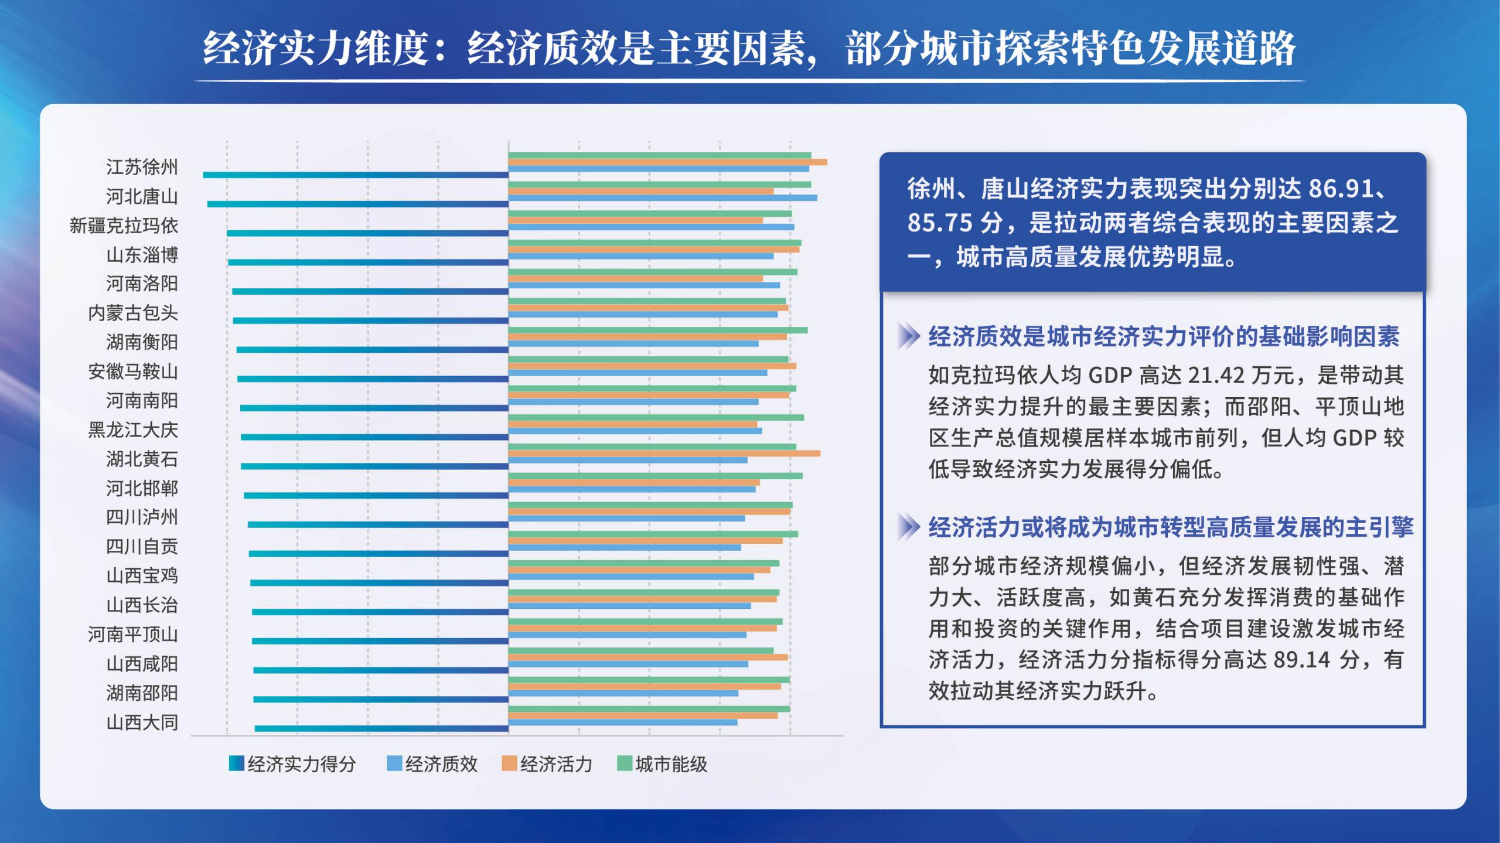 06201503中国资源型城市转型发展指数(1)_13.jpg